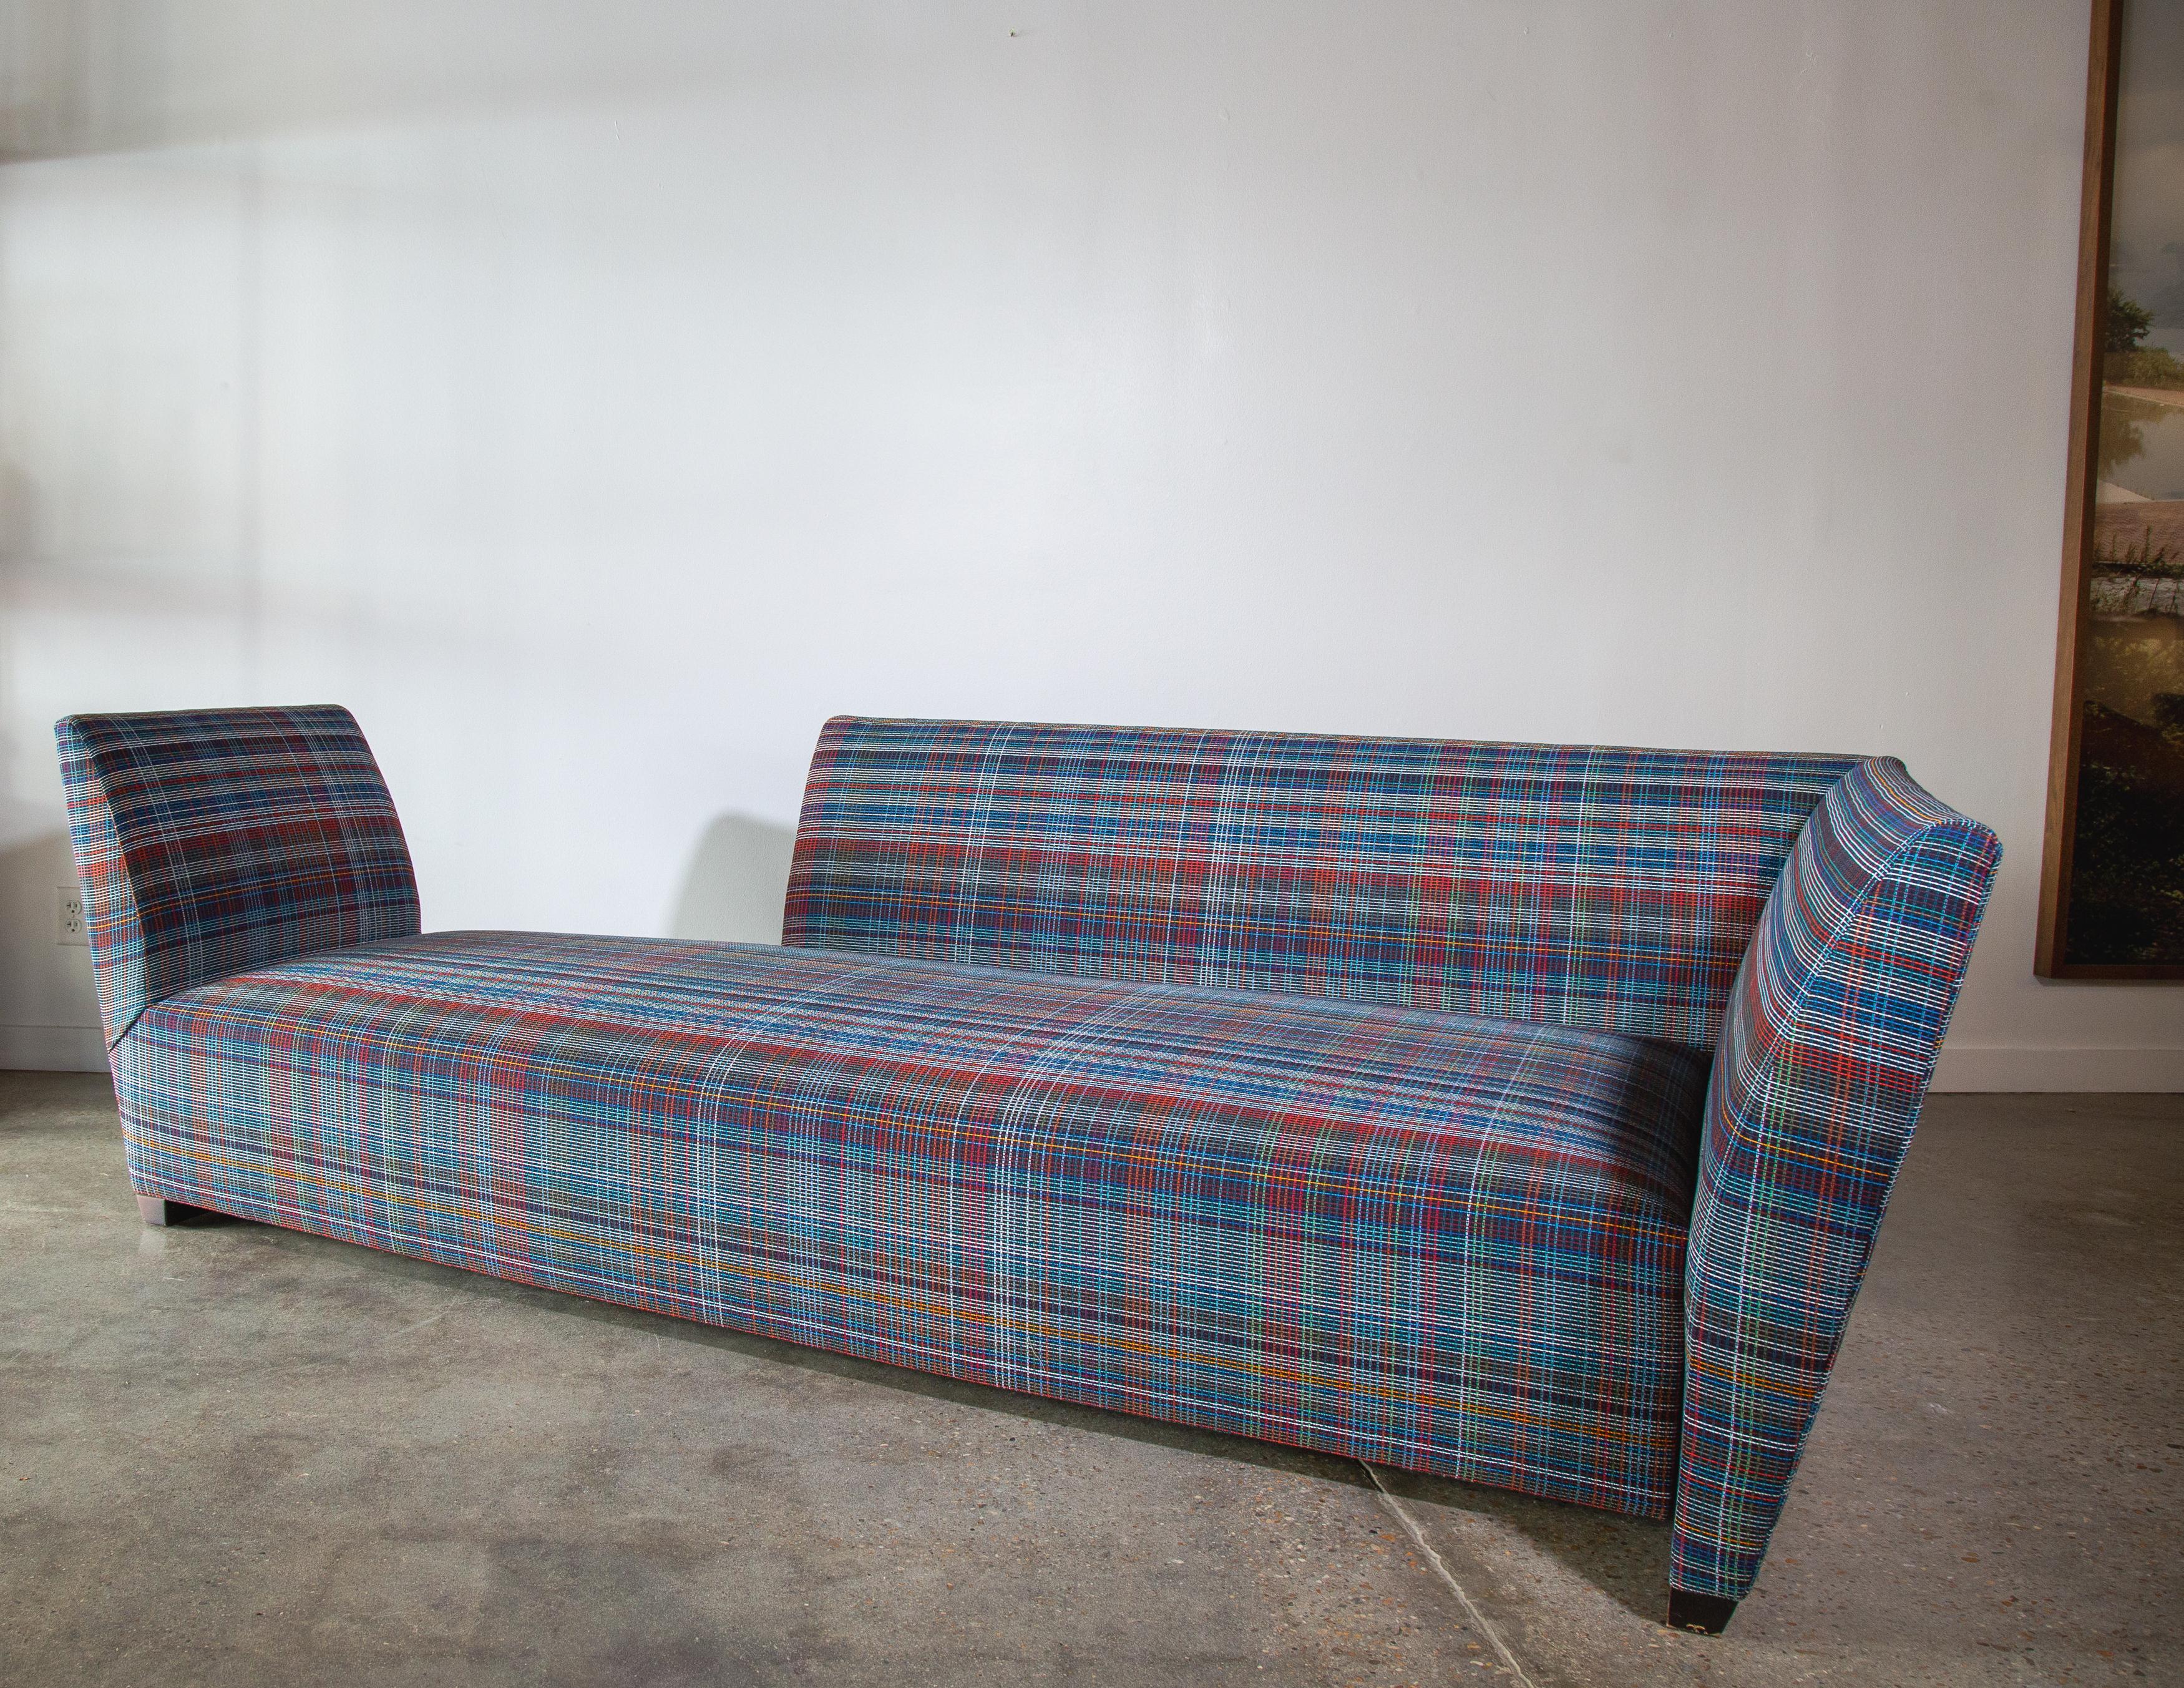 Un long canapé / chaise tete a tete conçu par Joe D'Urso pour Donghia. Une forme légèrement effilée avec un dos ouvert pour le passage. MEAN est conçu pour flotter dans une pièce, d'où le nom d'